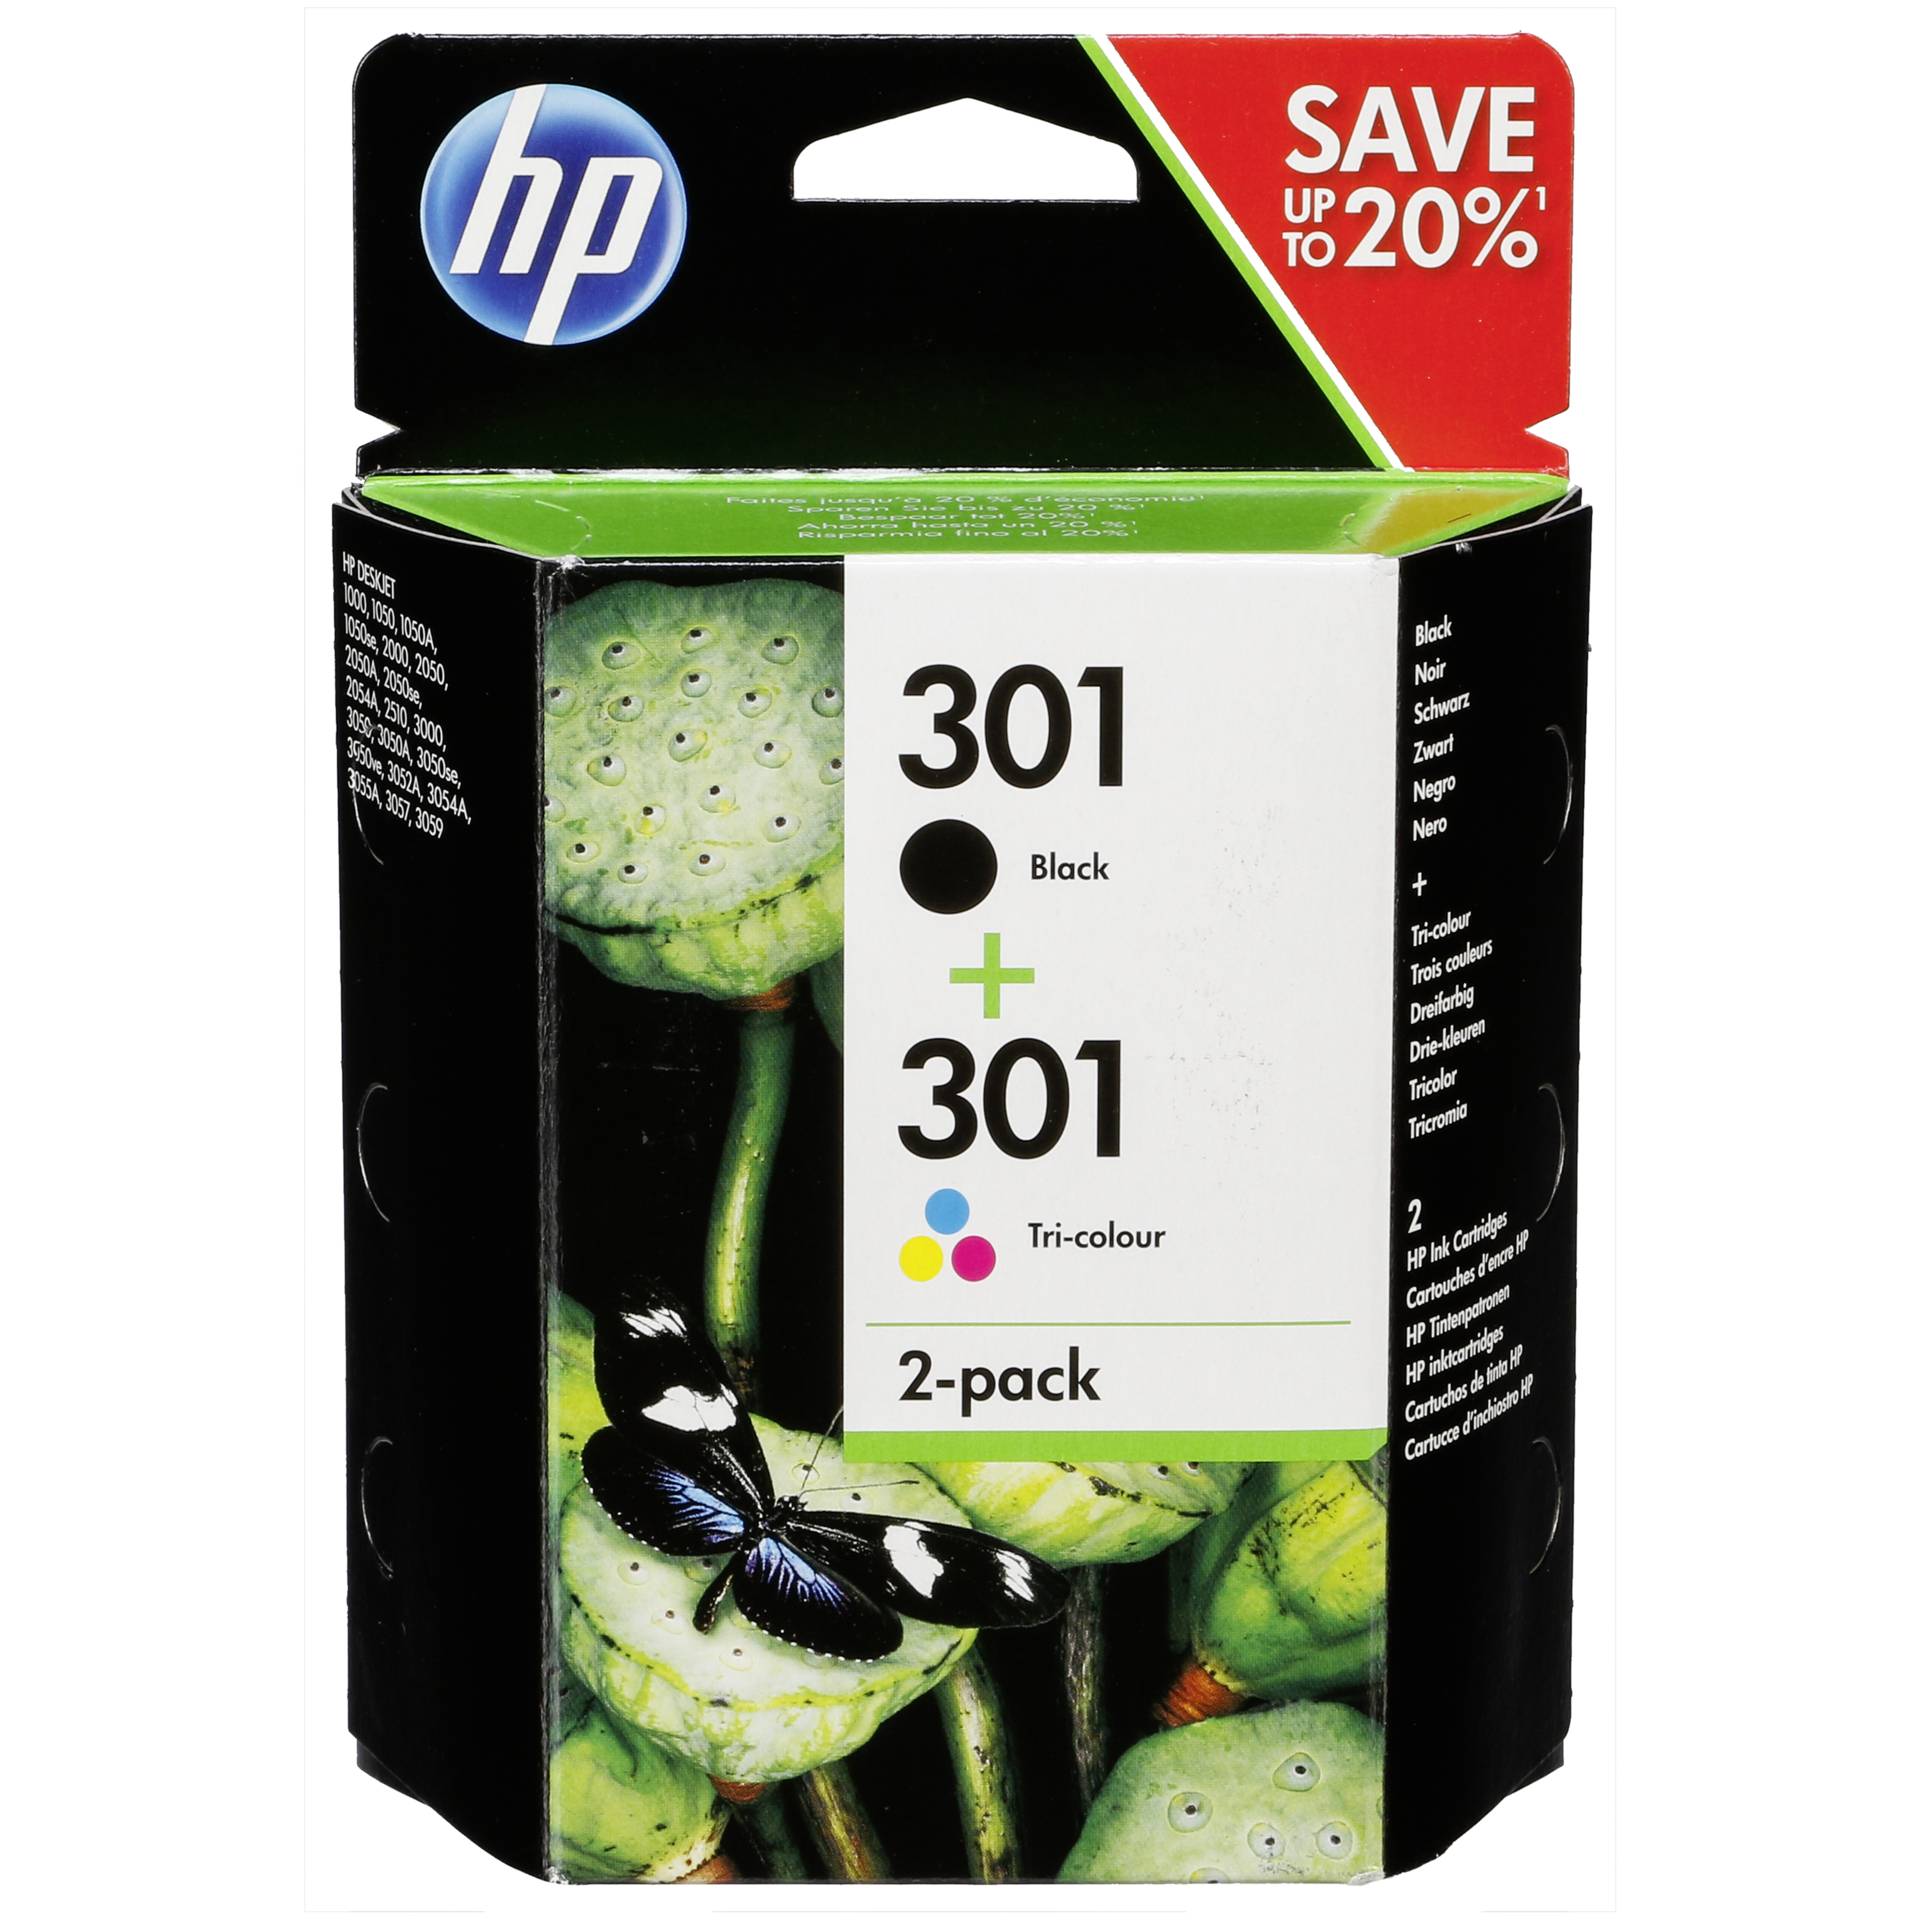 HP 301 Druckkopf mit Tinte 2er-Pack schwarz/farbig Original 190 Seiten schwarz, 165 Seiten farbig